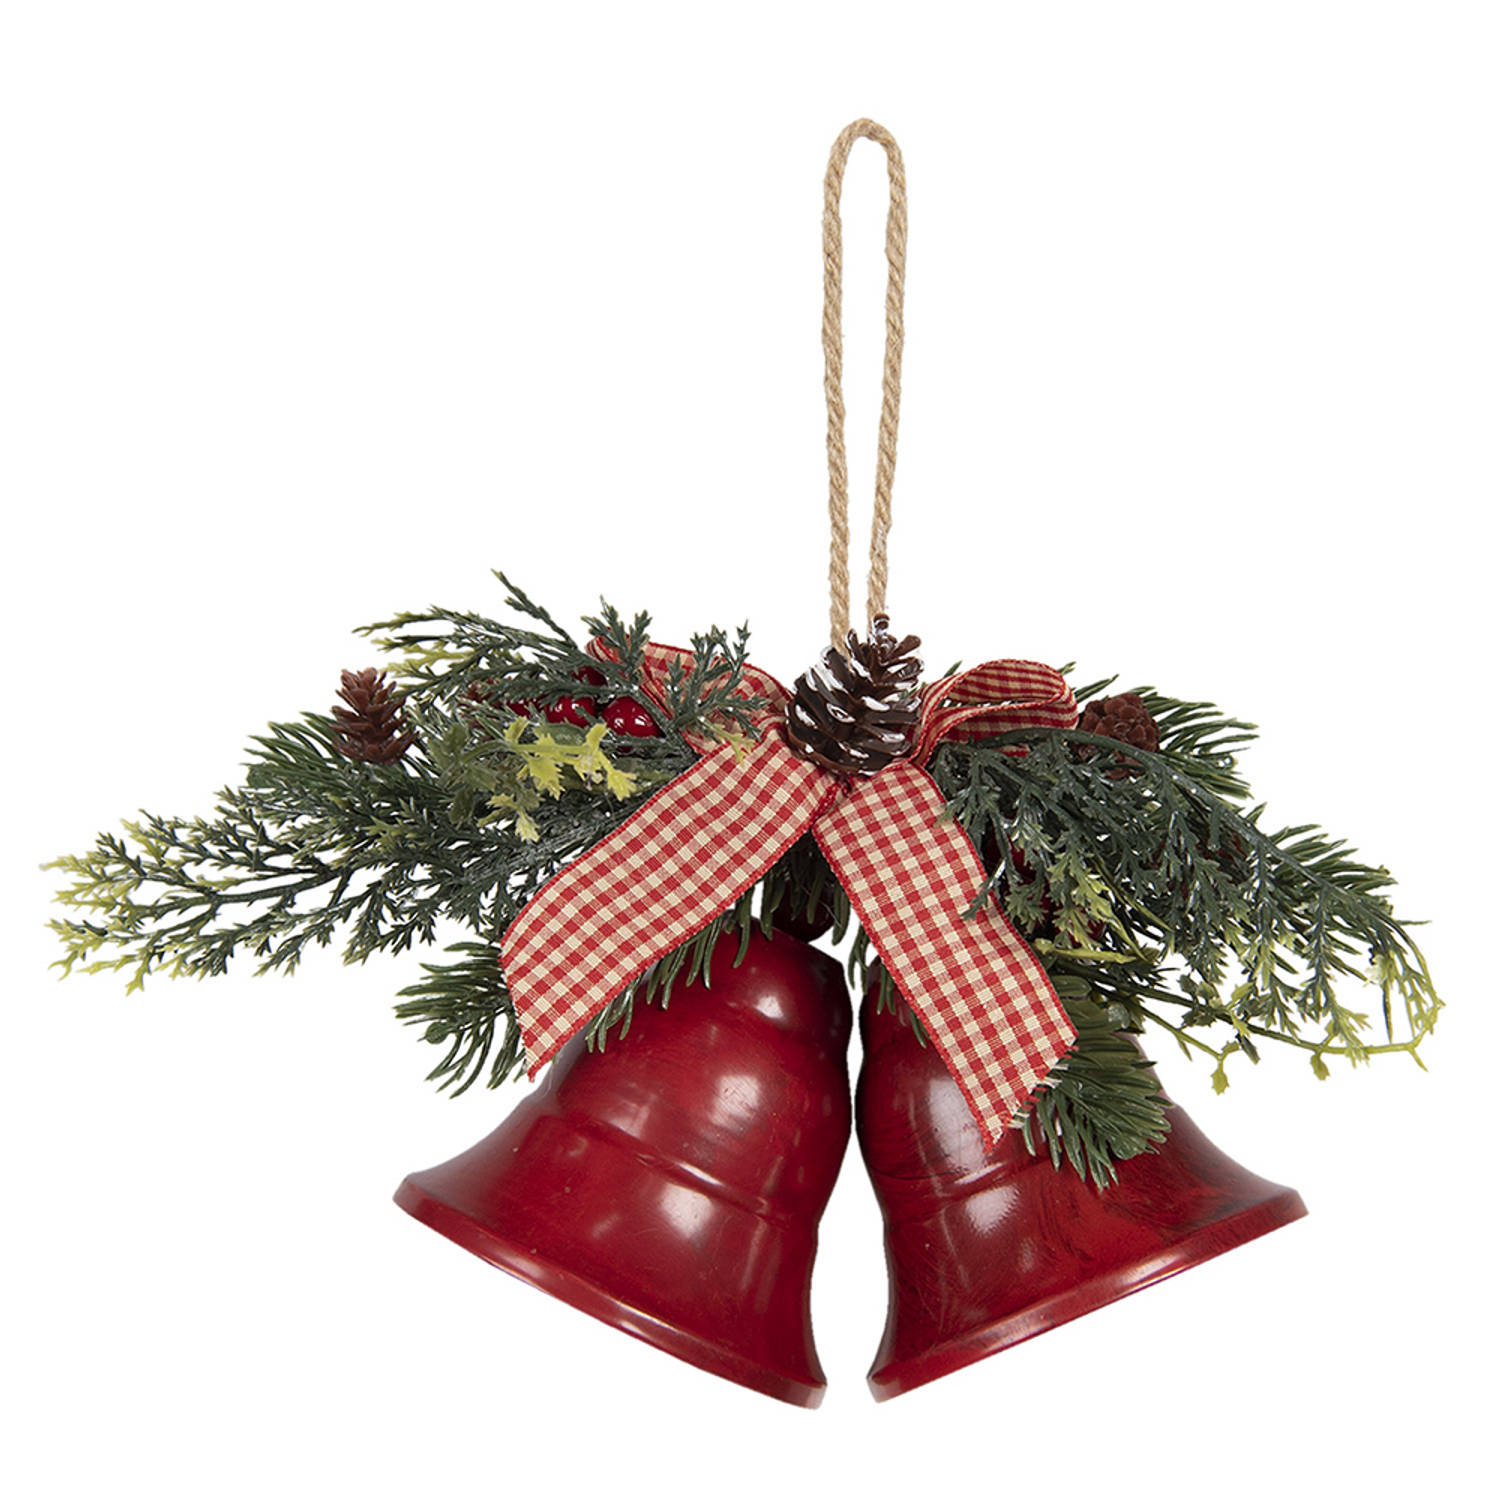 HAES DECO - Kersthanger Bellen - Formaat 17x9x12 cm - Kleur Rood - Materiaal Metaal - Kerstversiering, Kerstdecoratie, Decoratie Hanger, Kerstboomversiering